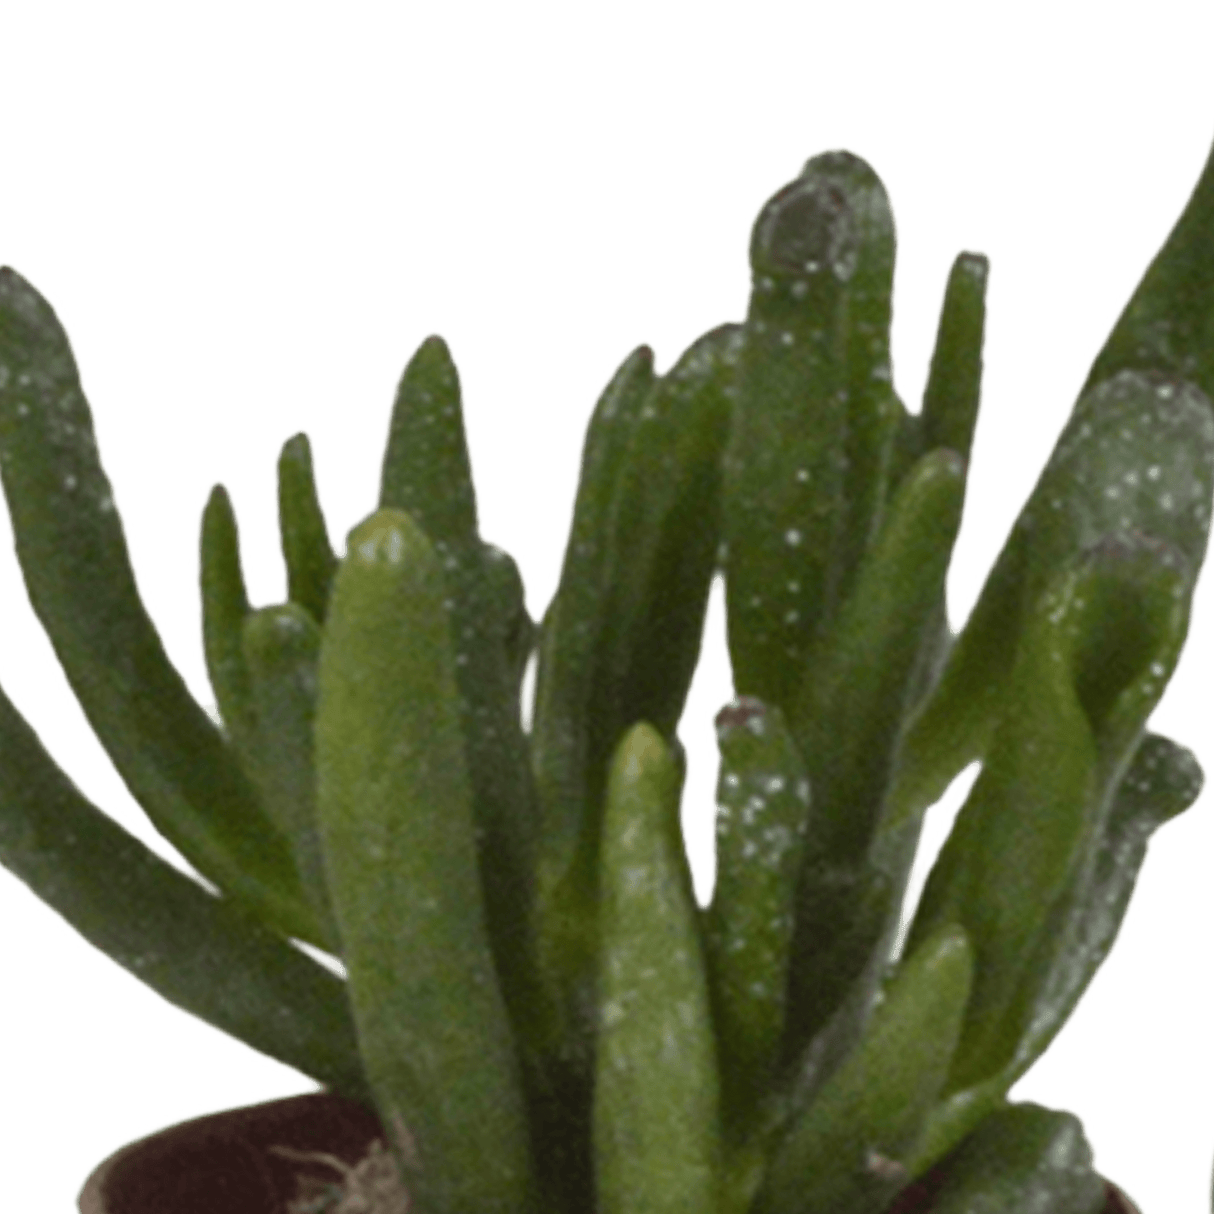 Livraison plante - Succulentes, box de 10 plantes - h13cm, Ø5,5cm - plantes d'intérieur